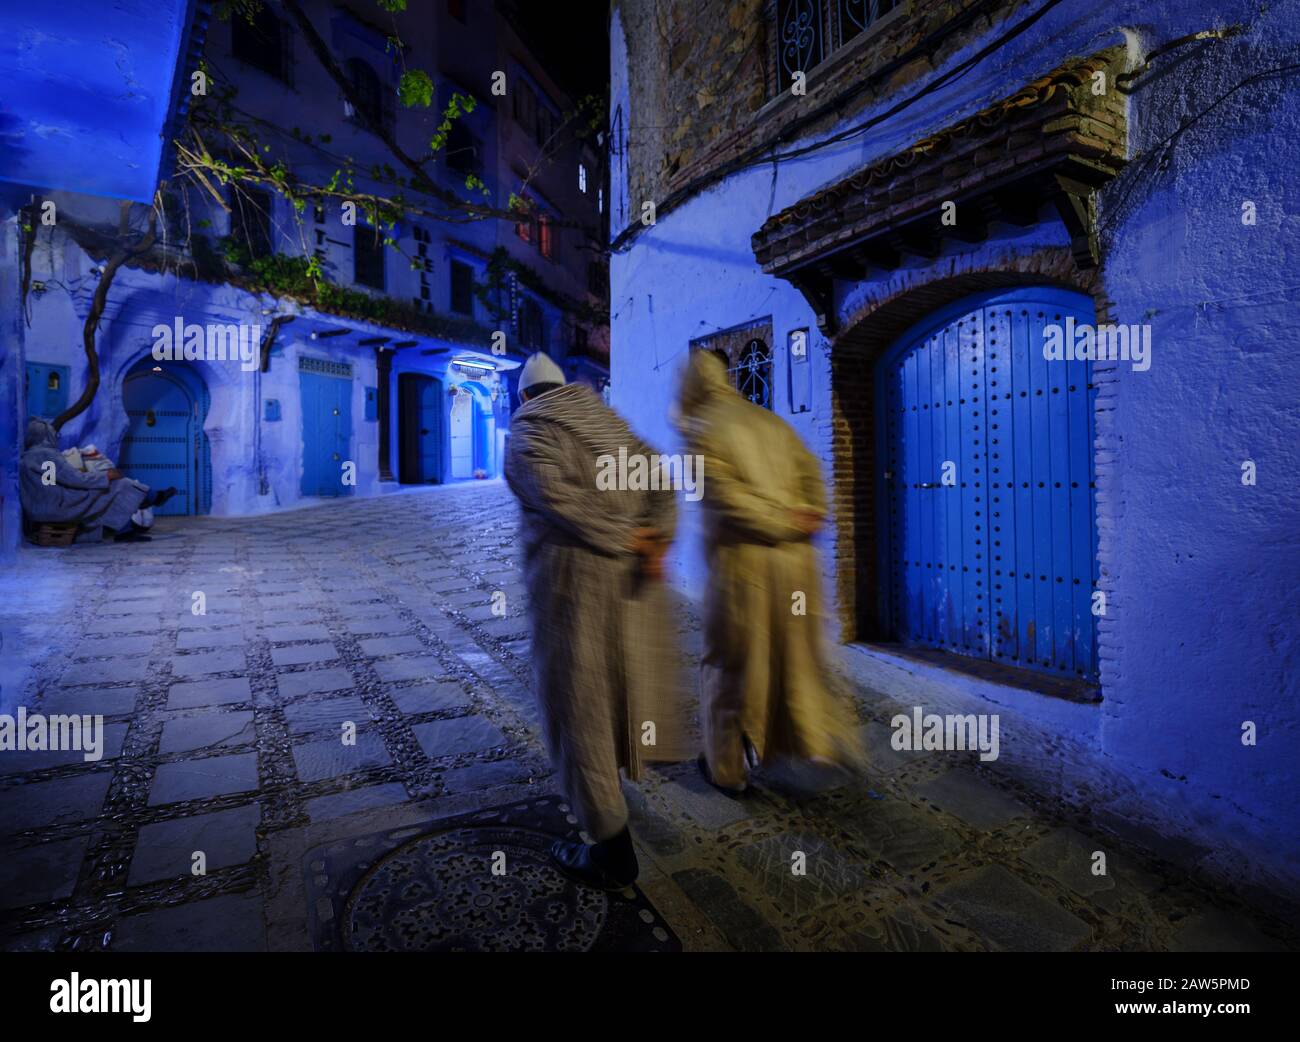 Chefchaouen, MAROC - VERS MAI 2018 : deux personnes marchant dans la rue principale de Chefchaouen la nuit. Banque D'Images